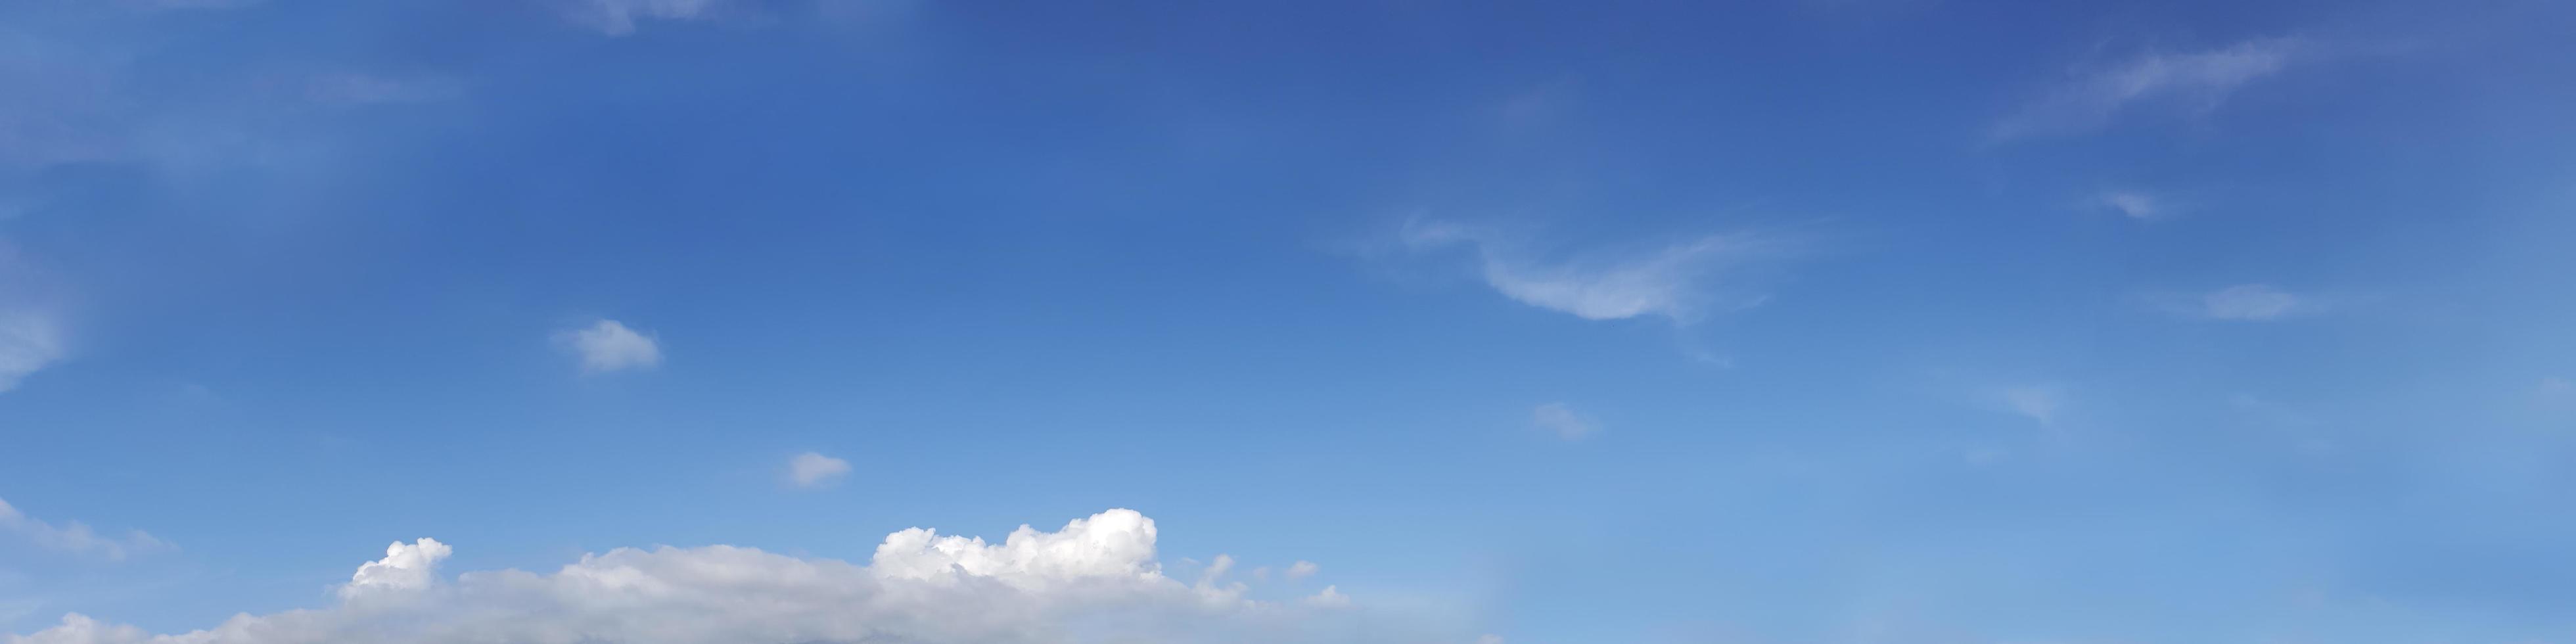 Panoramahimmel mit Wolken an einem sonnigen Tag. foto